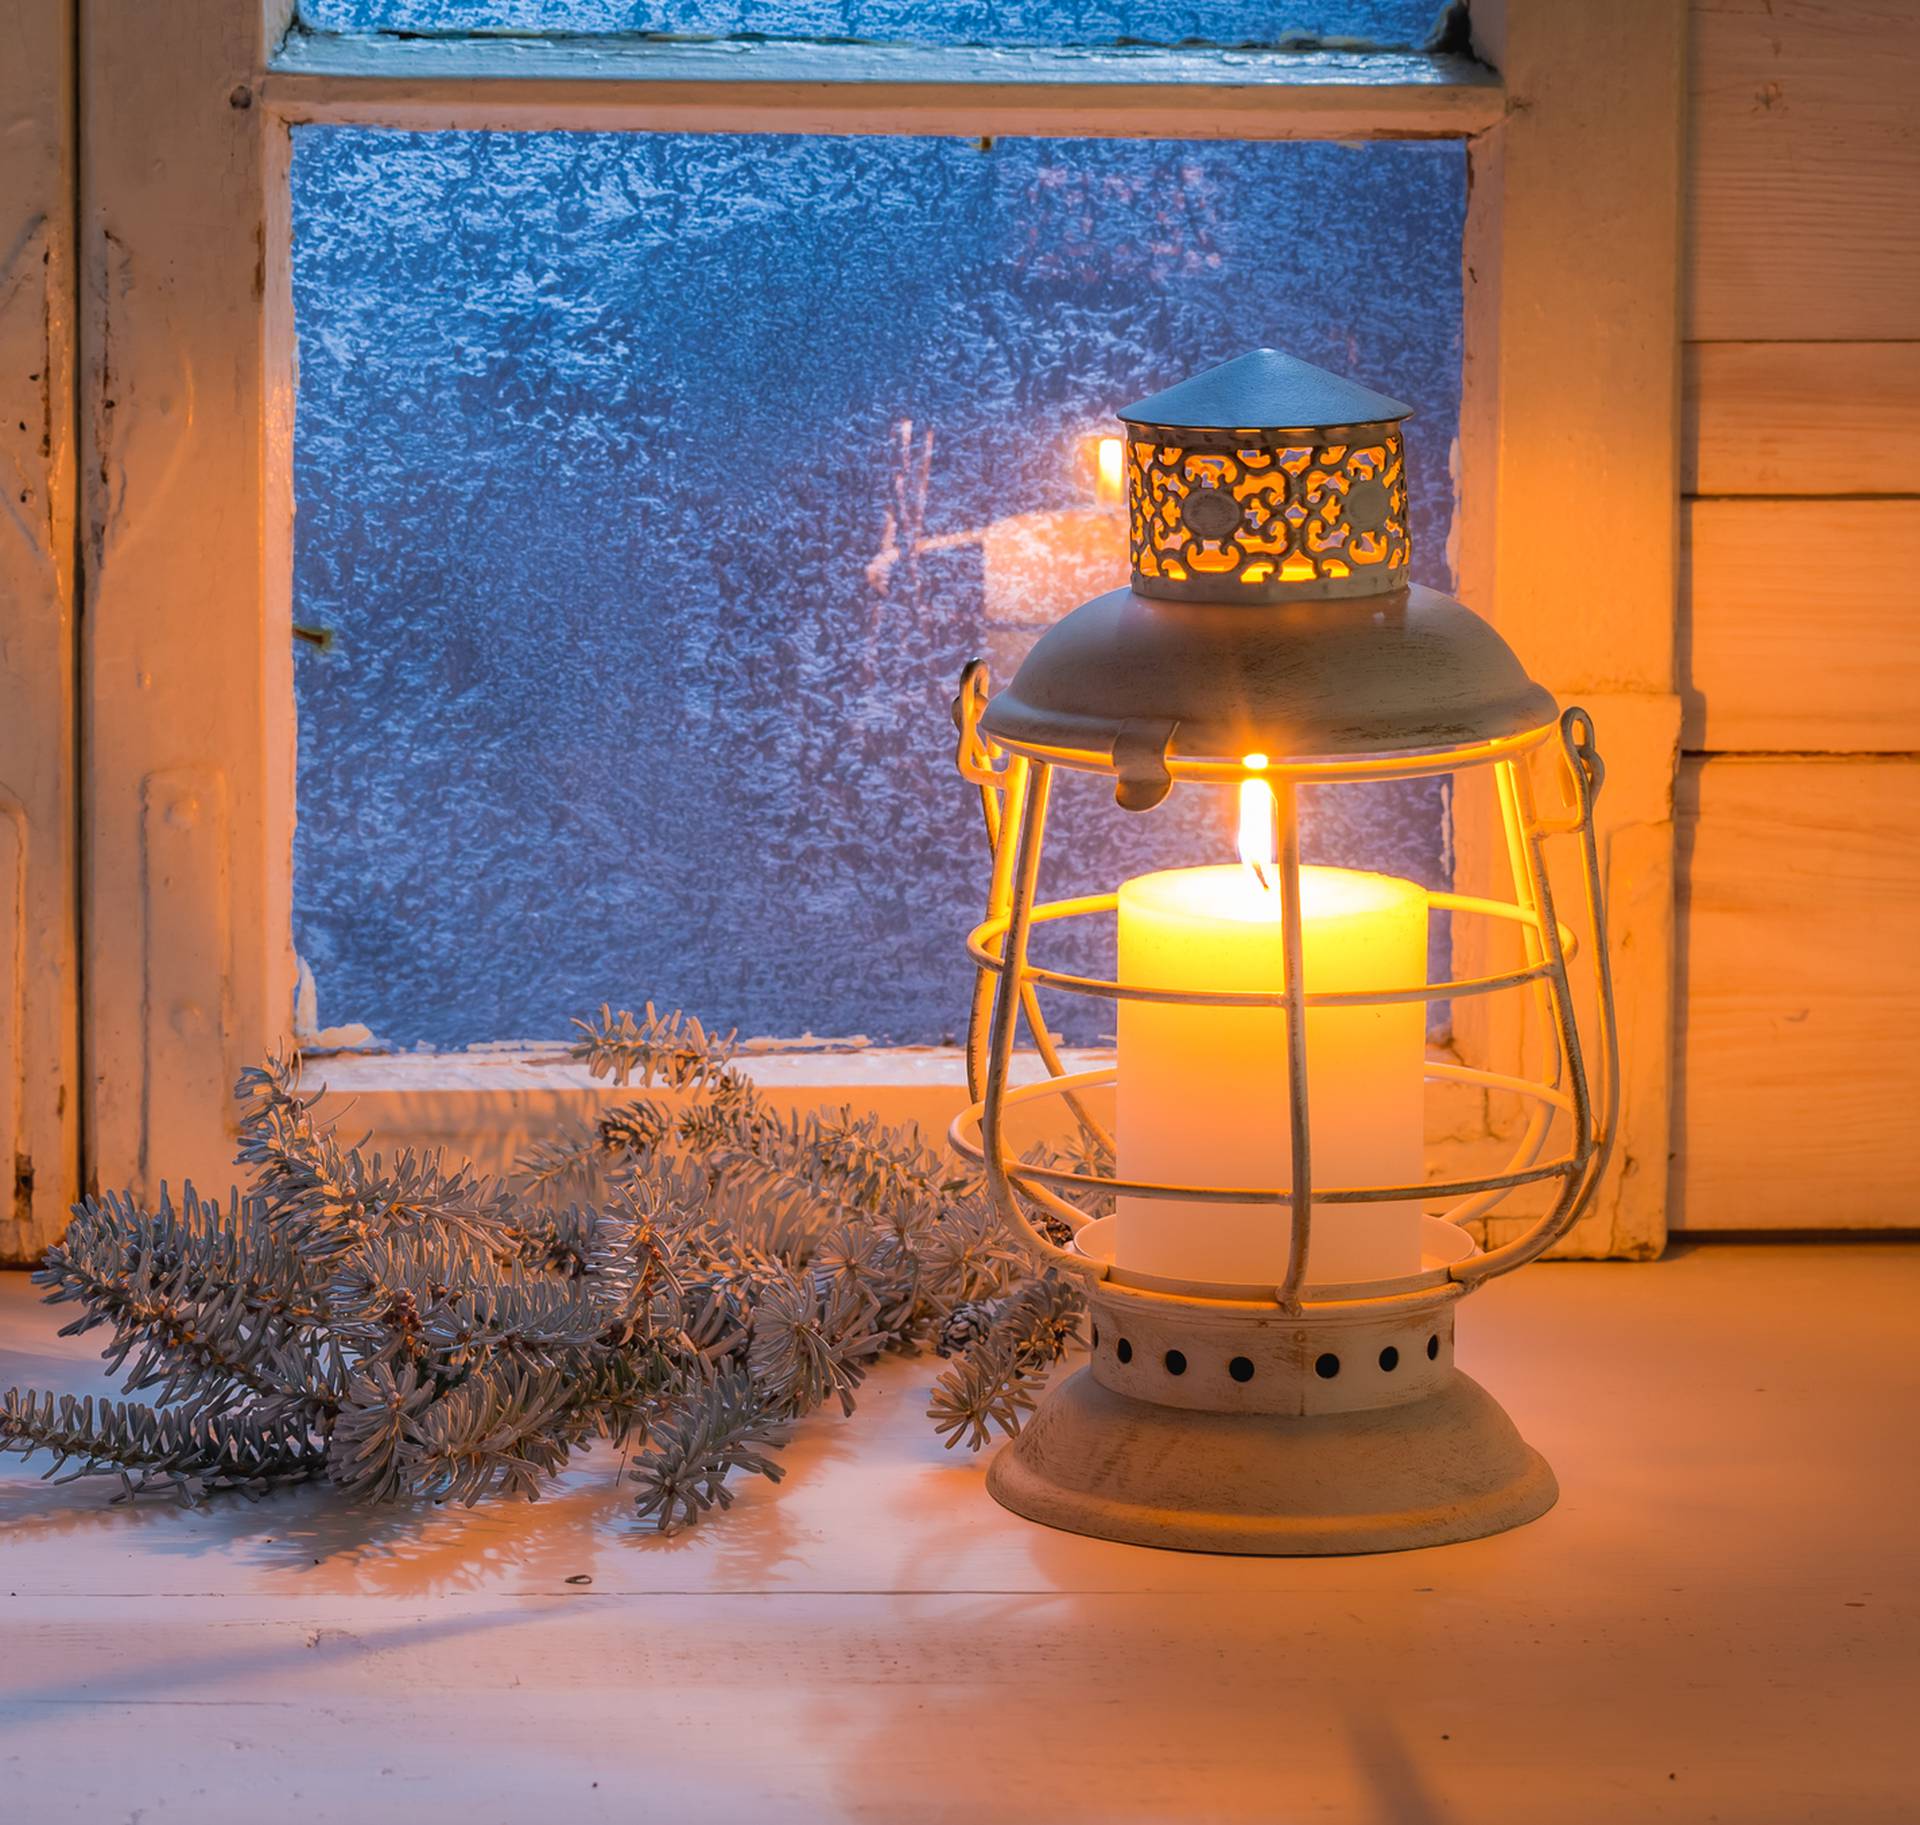 Kako usred zime održavati zrak svježim u domu? Jednostavno je